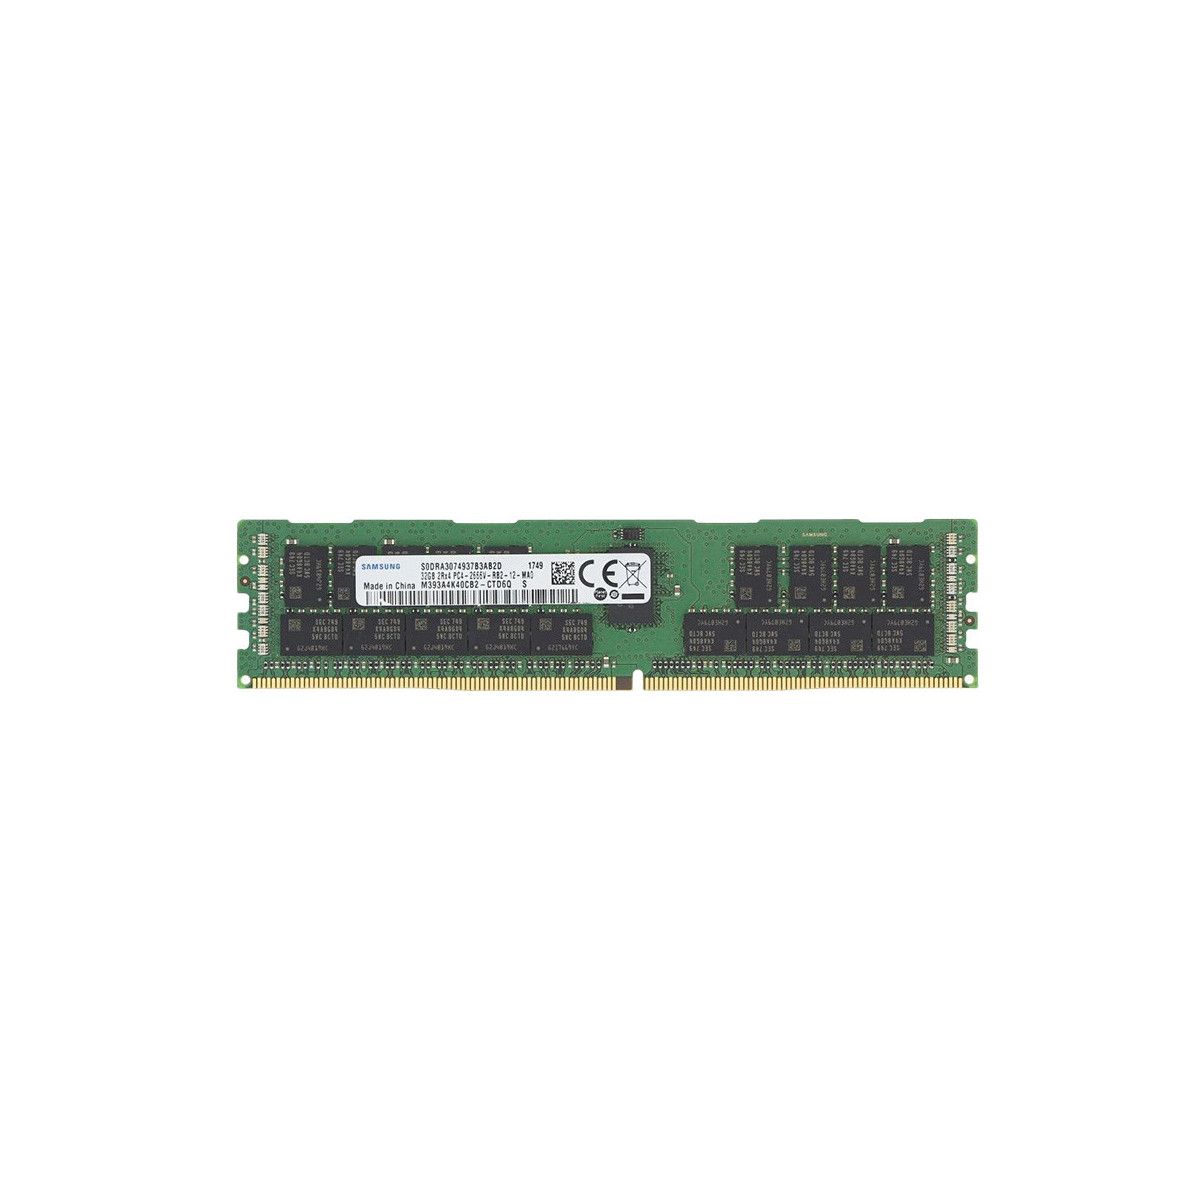 815100-K21-MS - Memstar 1x 32GB DDR4-2666 RDIMM PC4-21300V-R - Memstar Compatible OEM Memory 1 - Memstar 